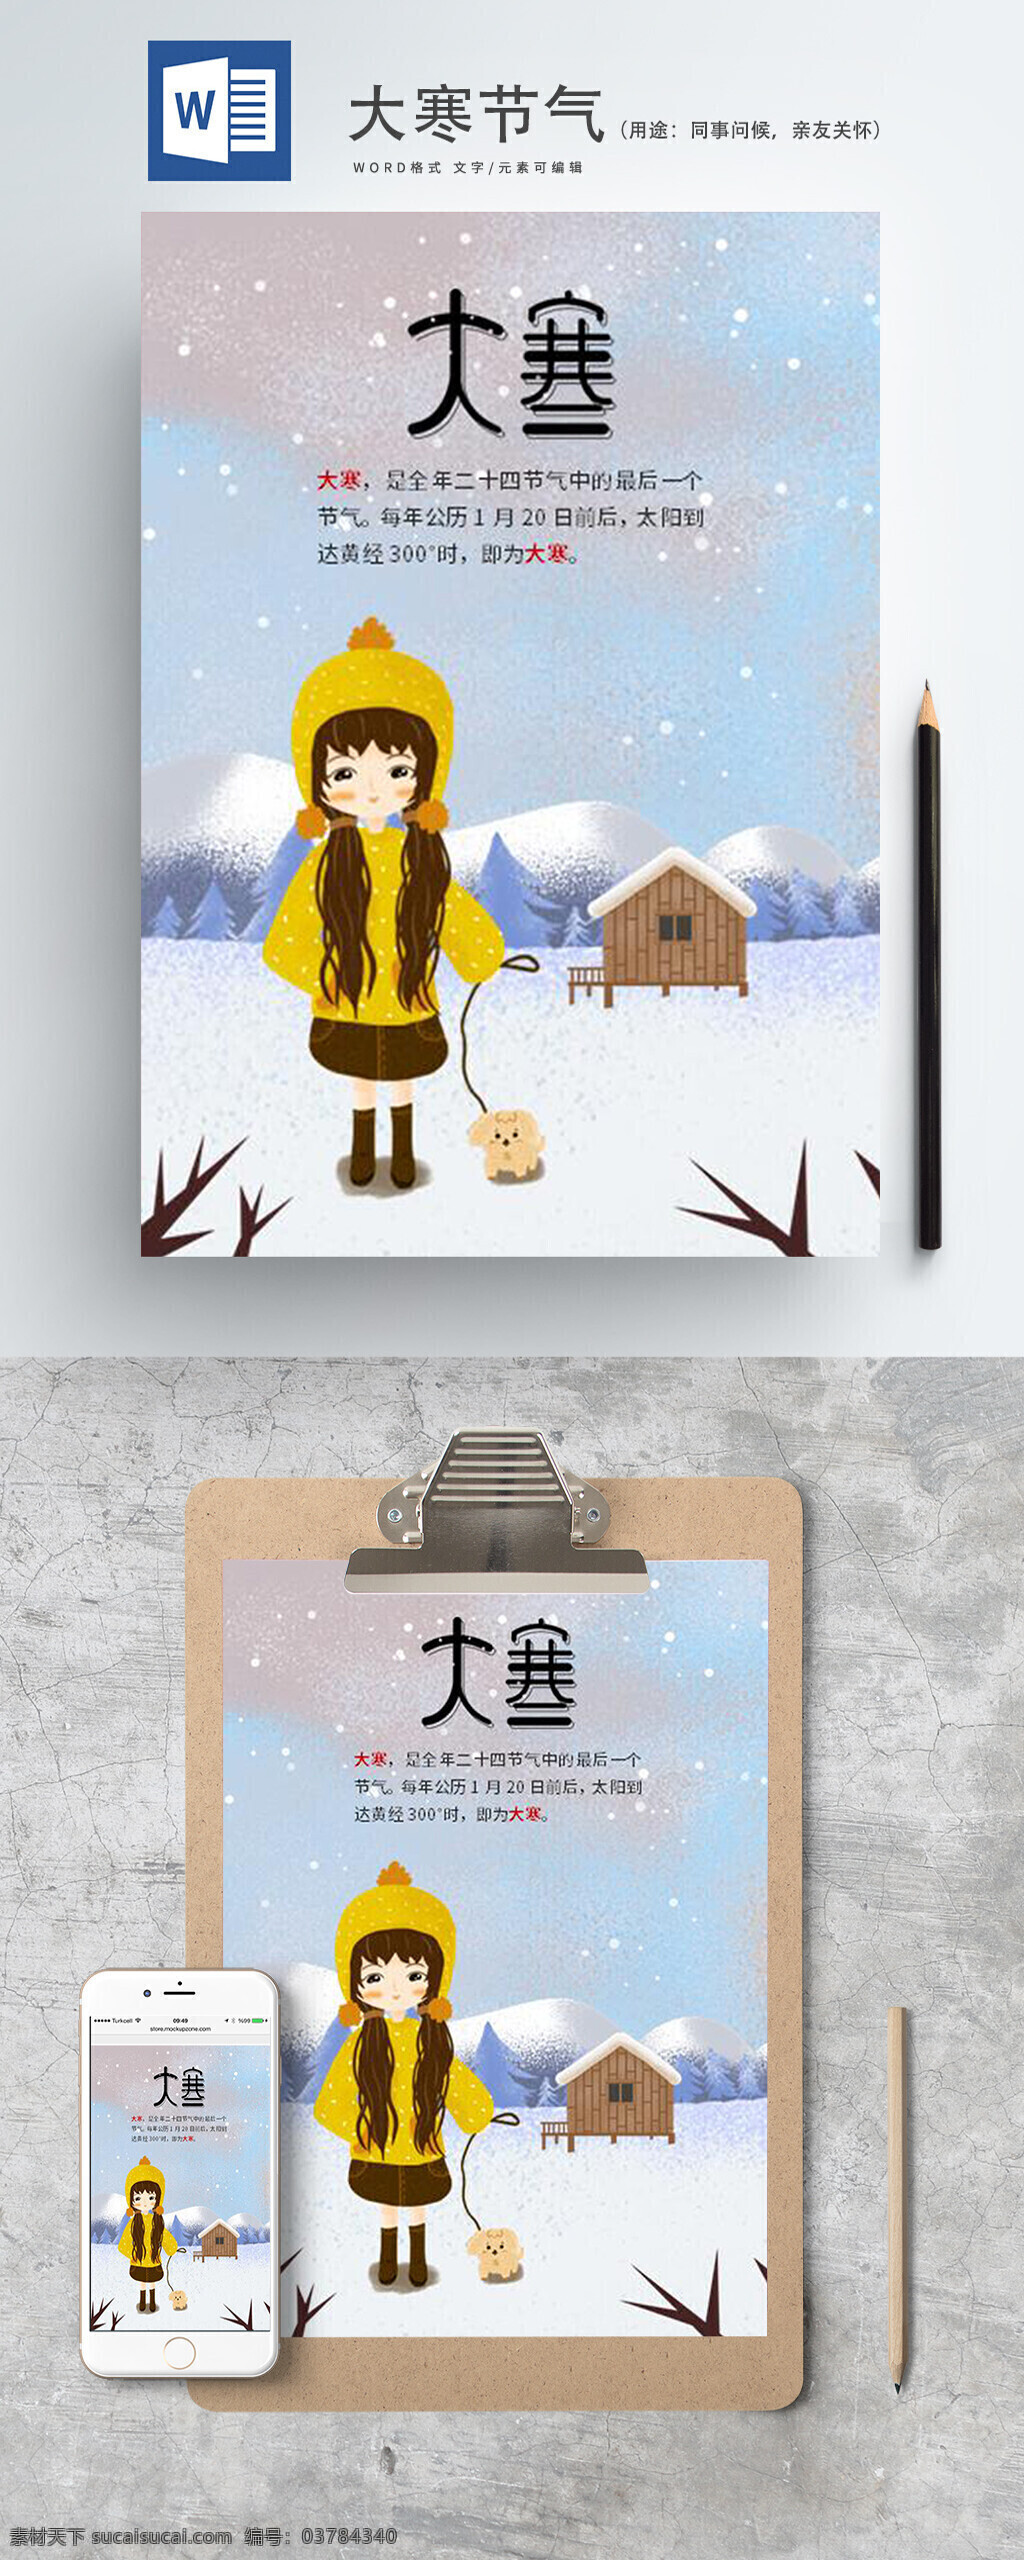 大寒 节气 卡通 手绘 海报 二十四节气 雪景 中华传统节气